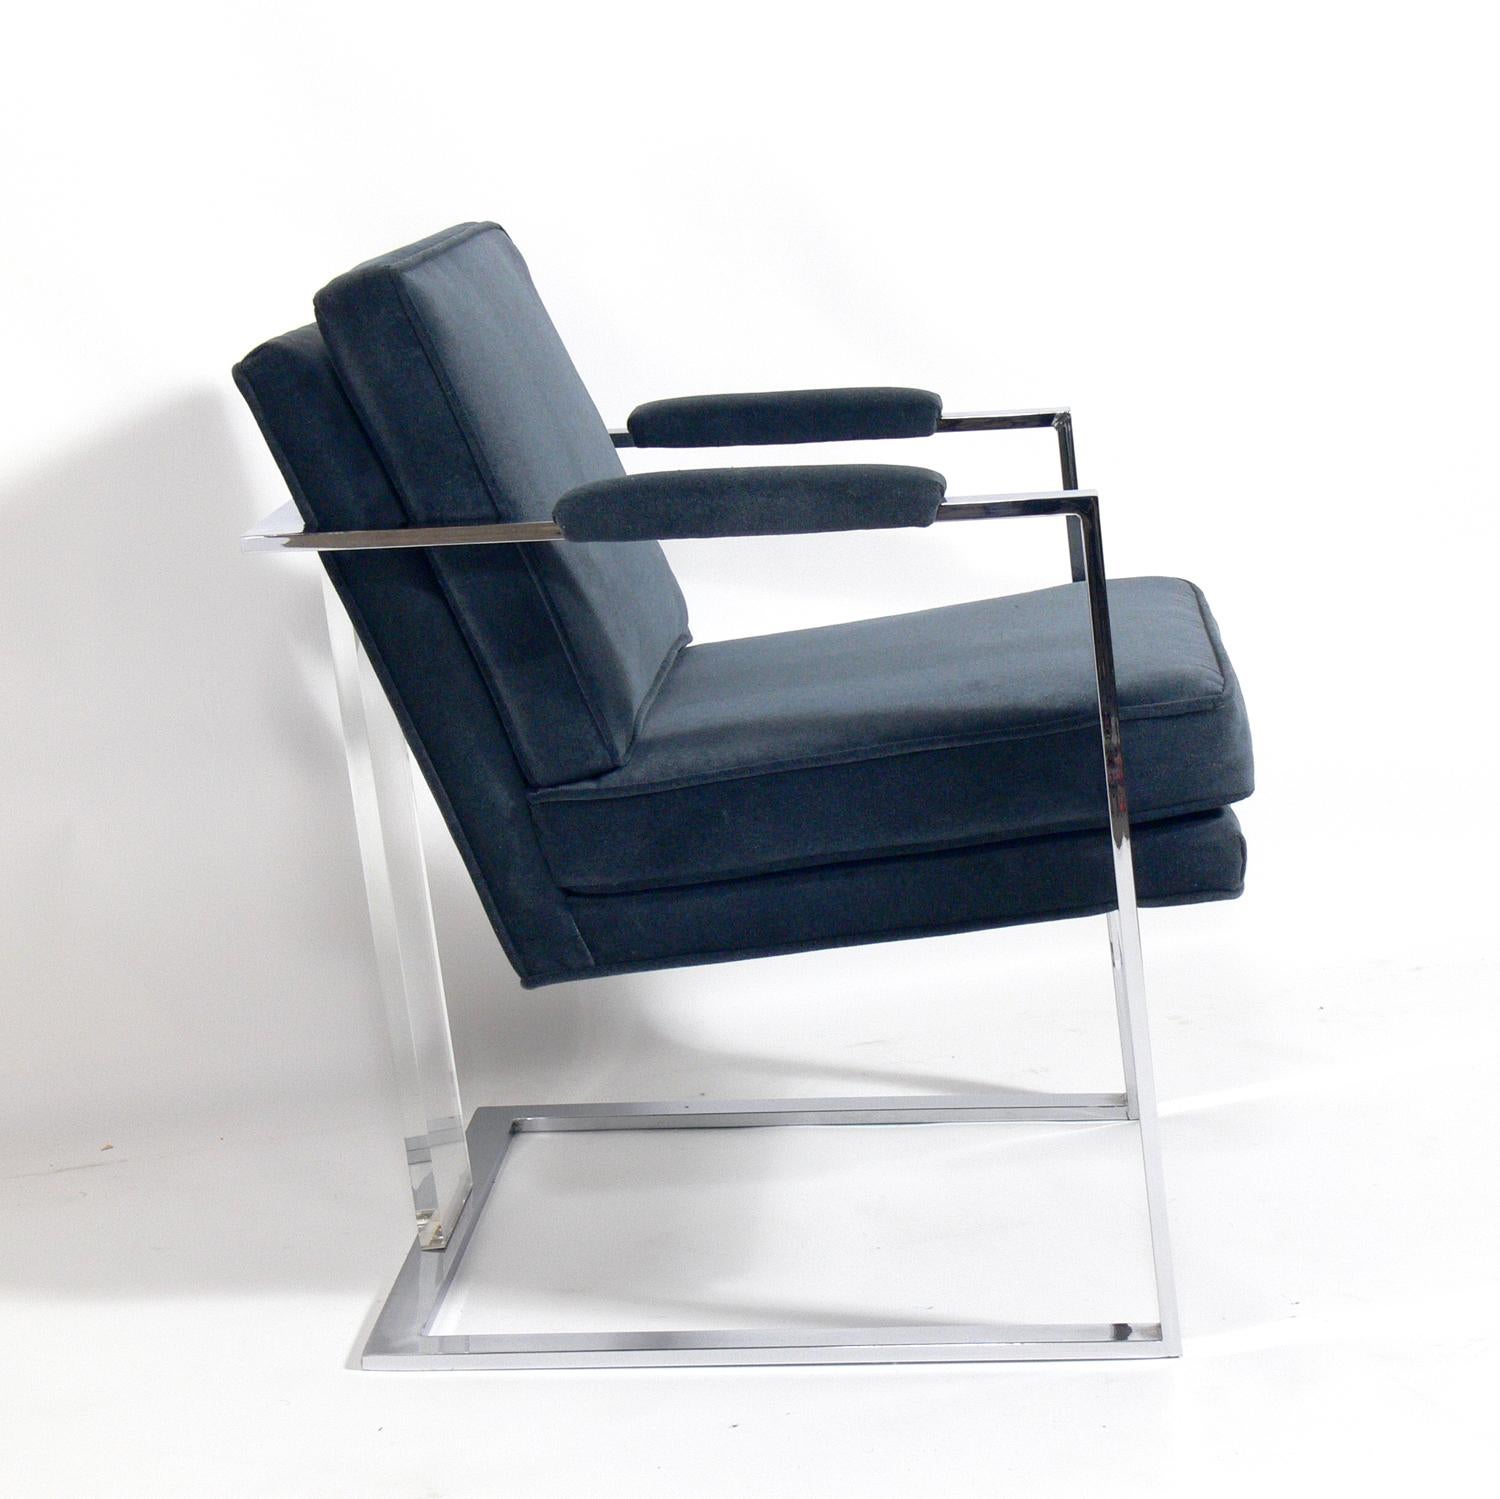 Chaise longue en chrome et Lucite du milieu du siècle, attribuée à Milo Baughman, Américain, vers les années 1960. Cette chaise a été récemment retapissée dans un revêtement velouté de couleur bleu ardoise.